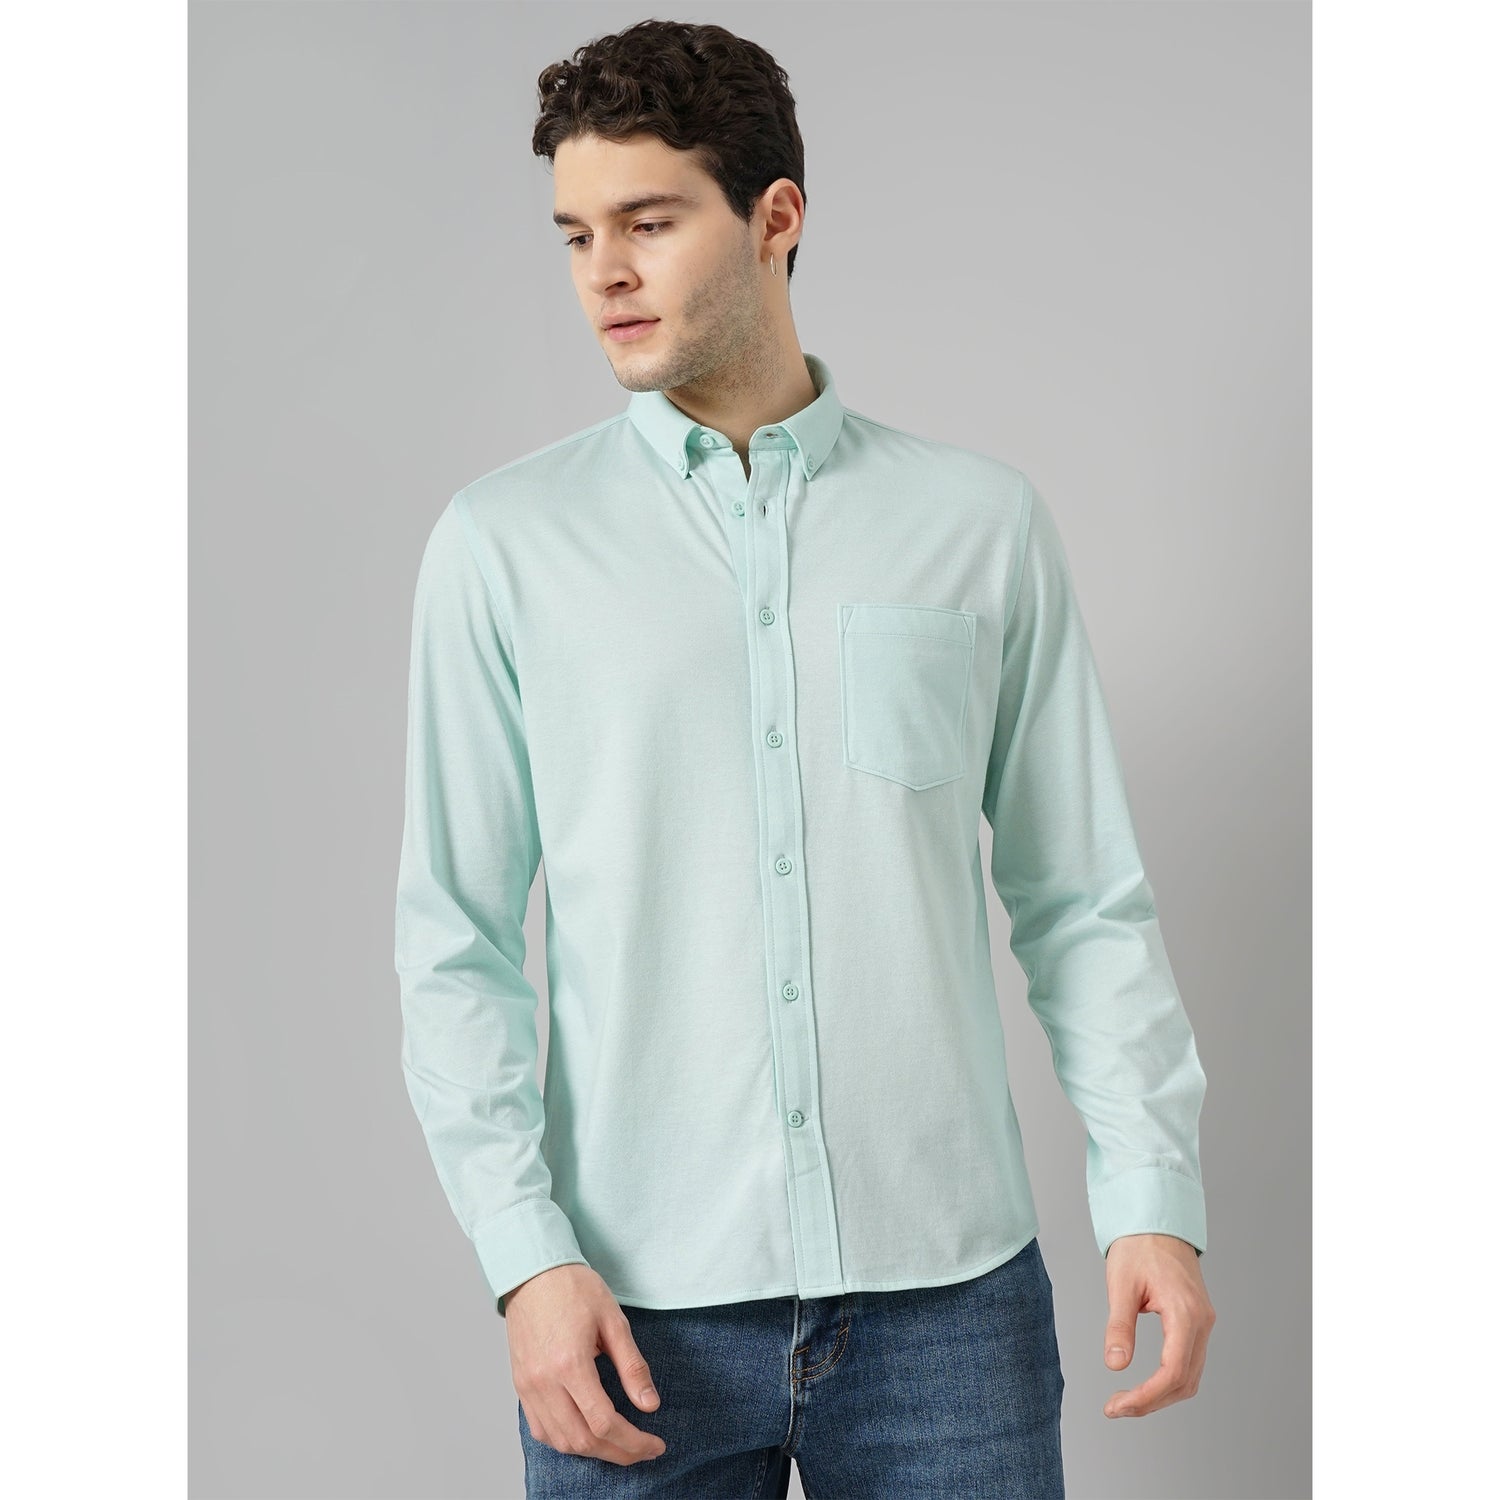 Men Green Solid Regular Fit Cotton Knit Shirt Casual Shirt (BAPIK1)